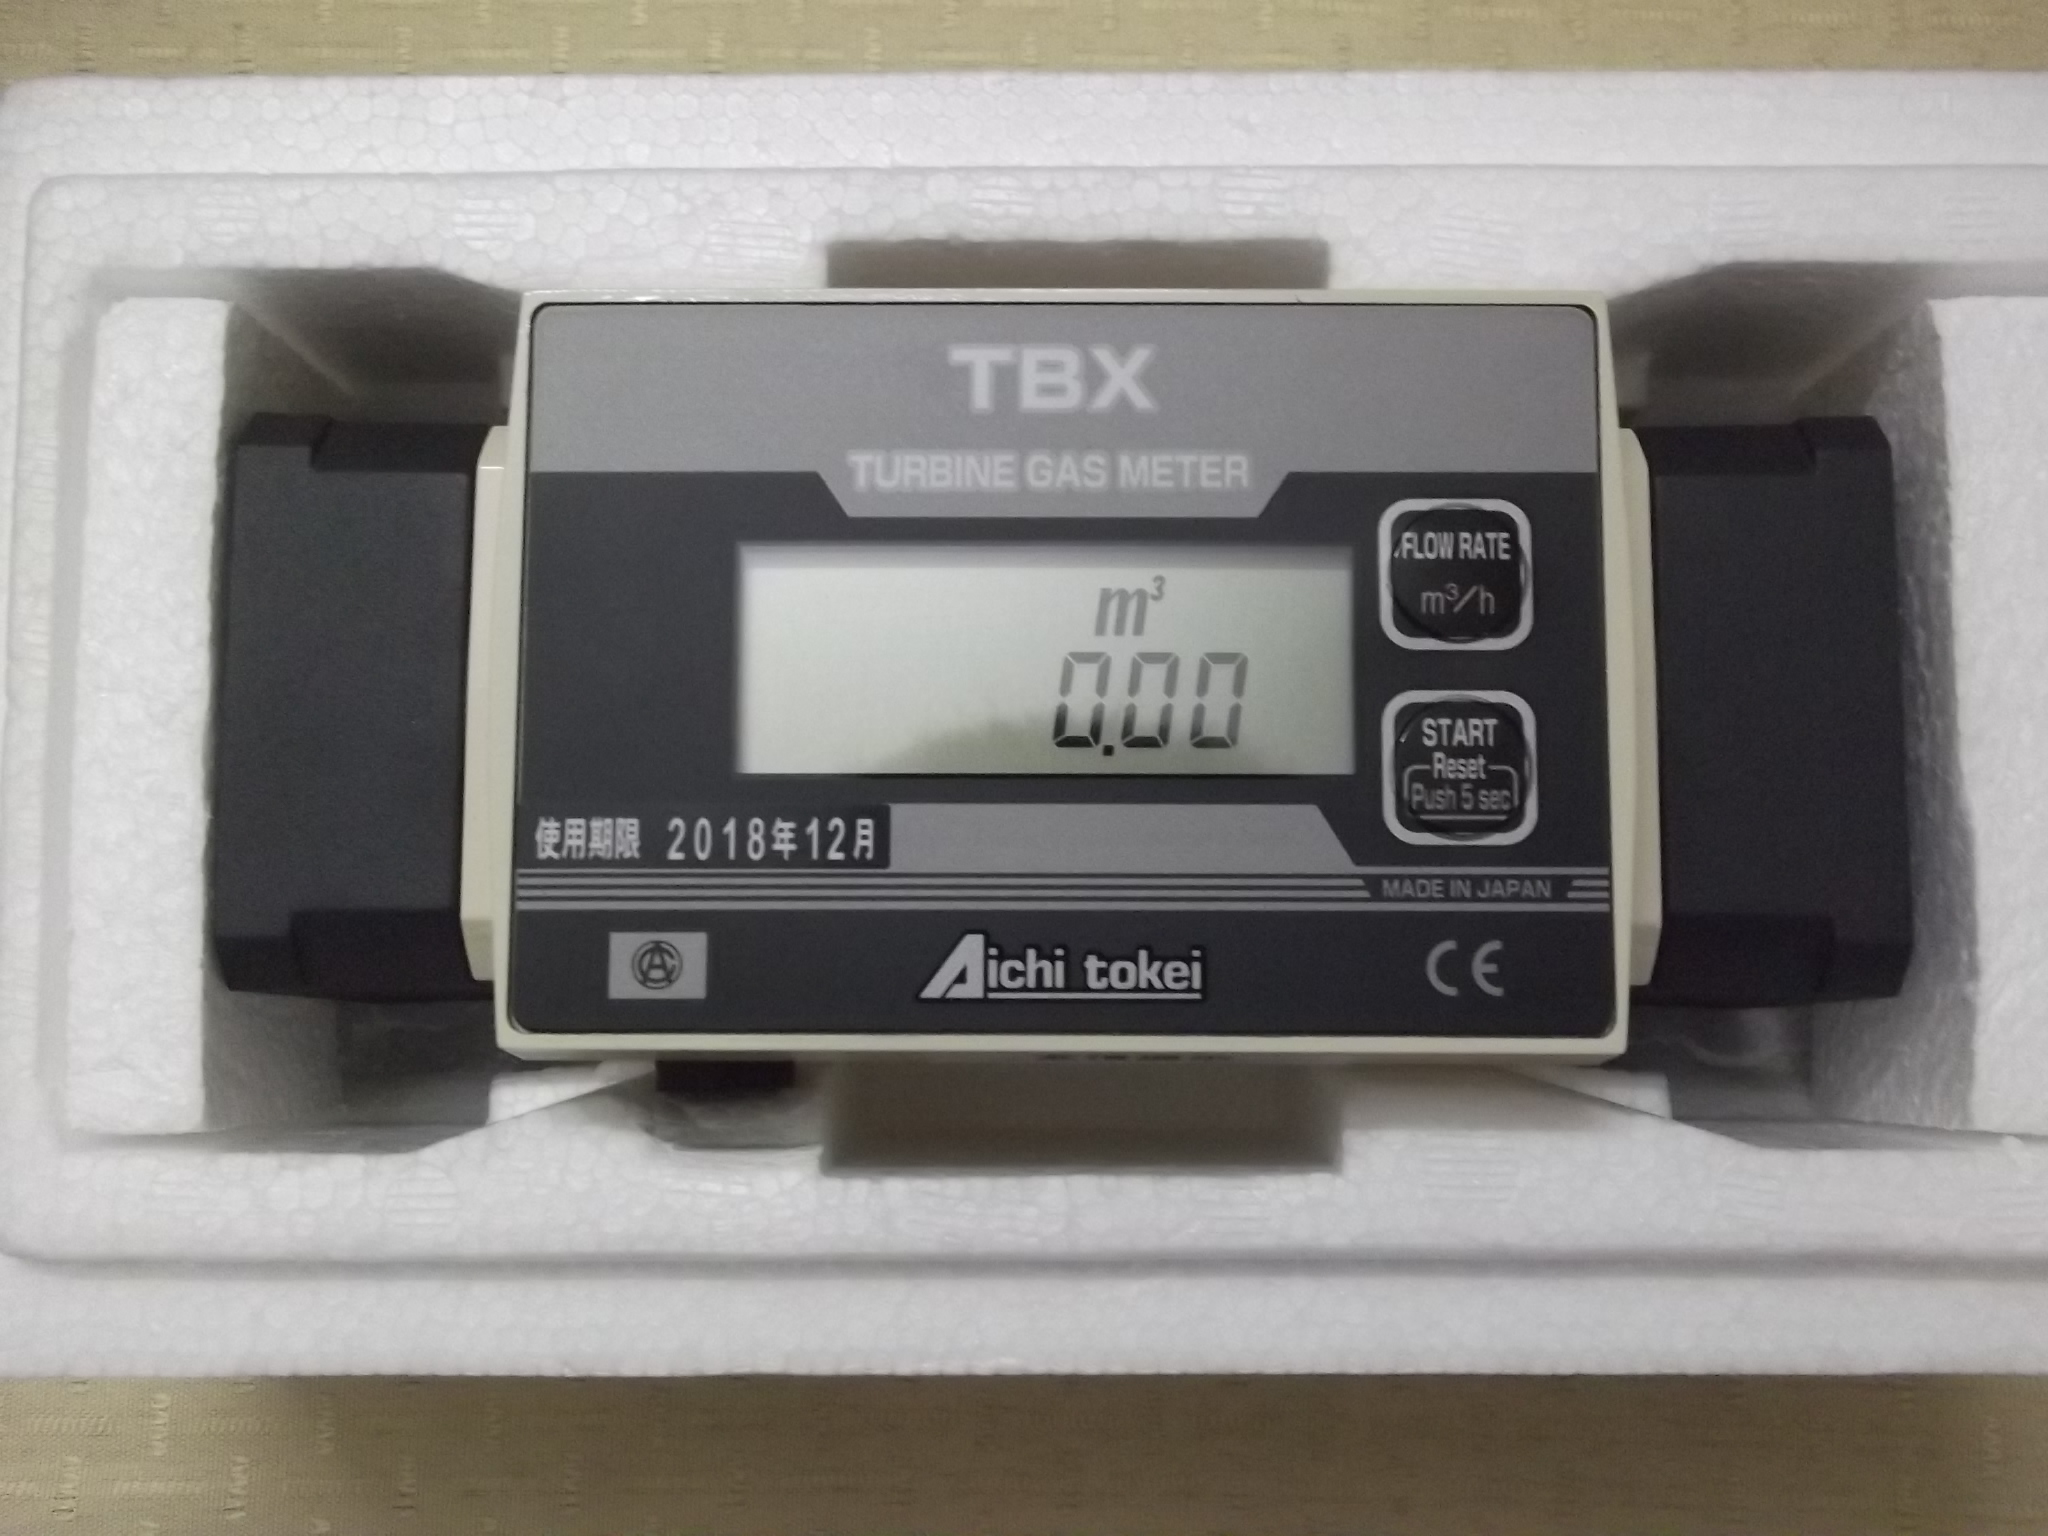 东莞市时计流量计厂家日本AICHI爱知时计流量计TBX-30生产厂商 代理商批发价格